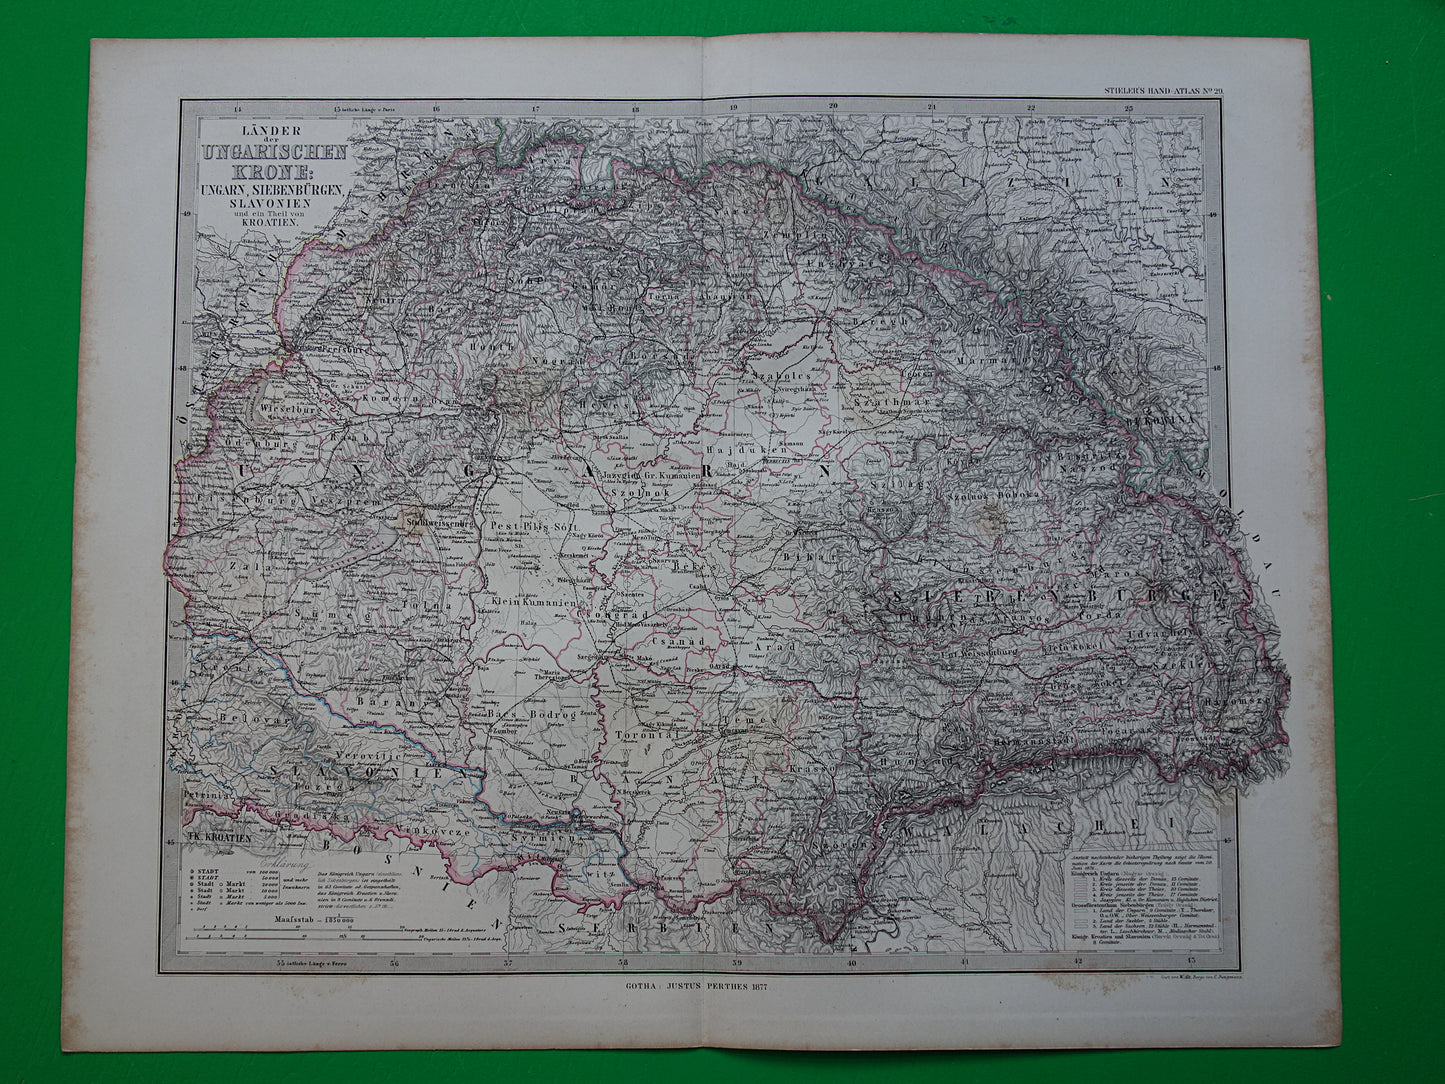 Hongarije Roemenië vintage landkaart uit 1885 van Budapest Transsylvanië Originele oude antieke kaart met jaartal - historische kaarten Oostenrijk-Hongarije